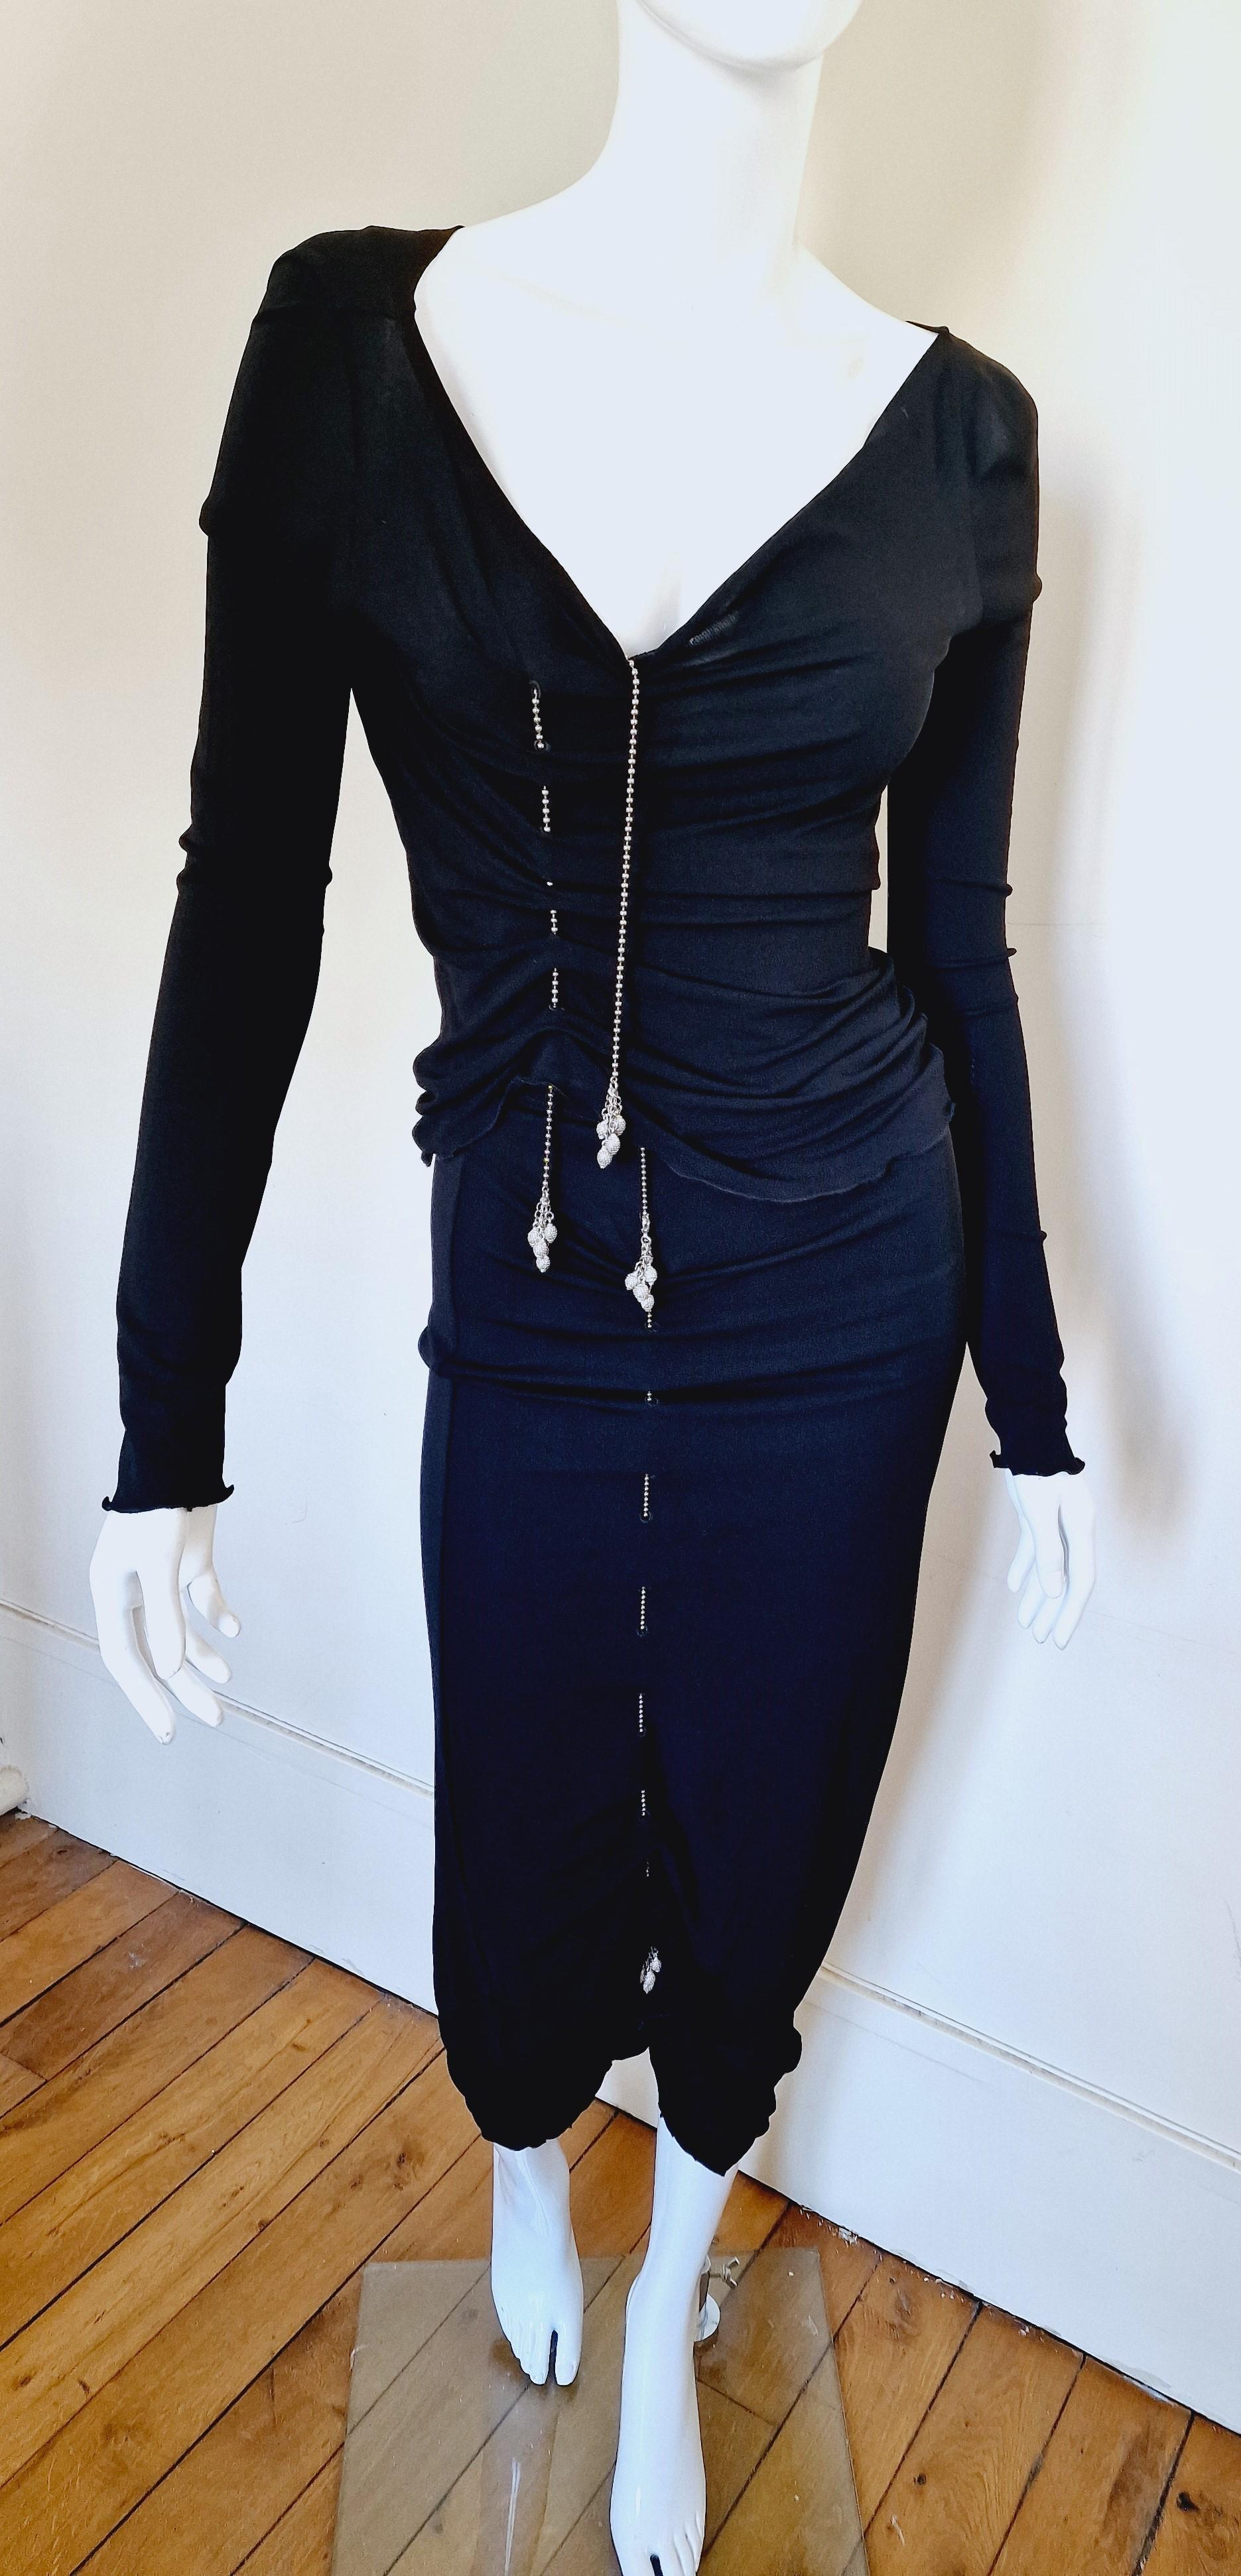 Kettenkleid von Jean Paul Gaultier!
2-teiliges Kleid! 
Sie können die Länge durch die Ketten einstellen. 

Die Frau des NBA-Stars Dwyane Wade, Gabrielle Union, trug zum 40. Geburtstag ihres Mannes das gleiche einteilige Kleid. 

SEHR GUTER